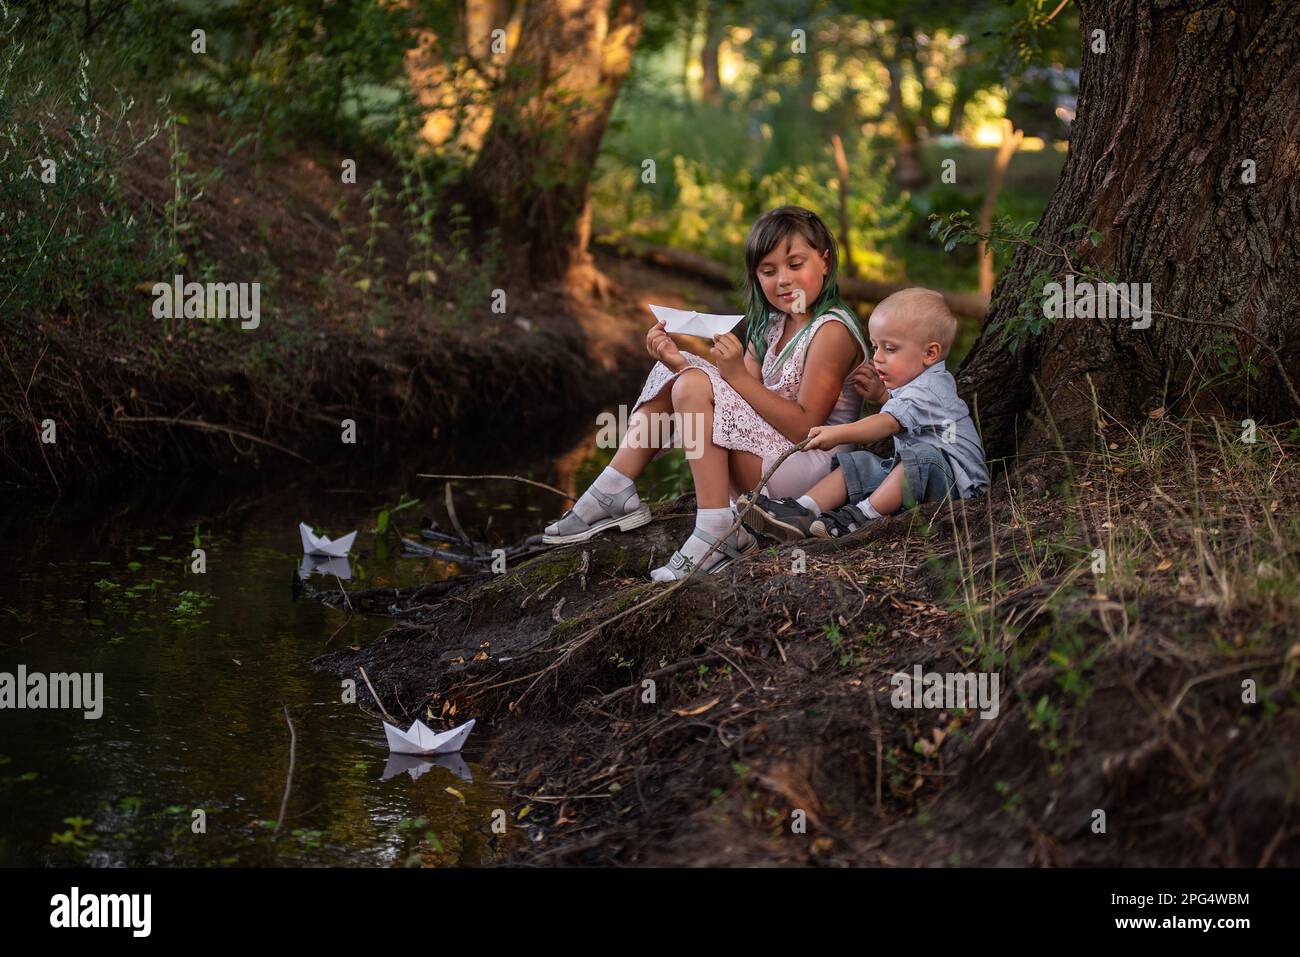 Fille et garçon sont assis sur la rive de la rivière, lançant le bateau de papier blanc origami dans l'eau. Sœur adolescente avec cheveux verts câlins frère tout-petit. Banque D'Images